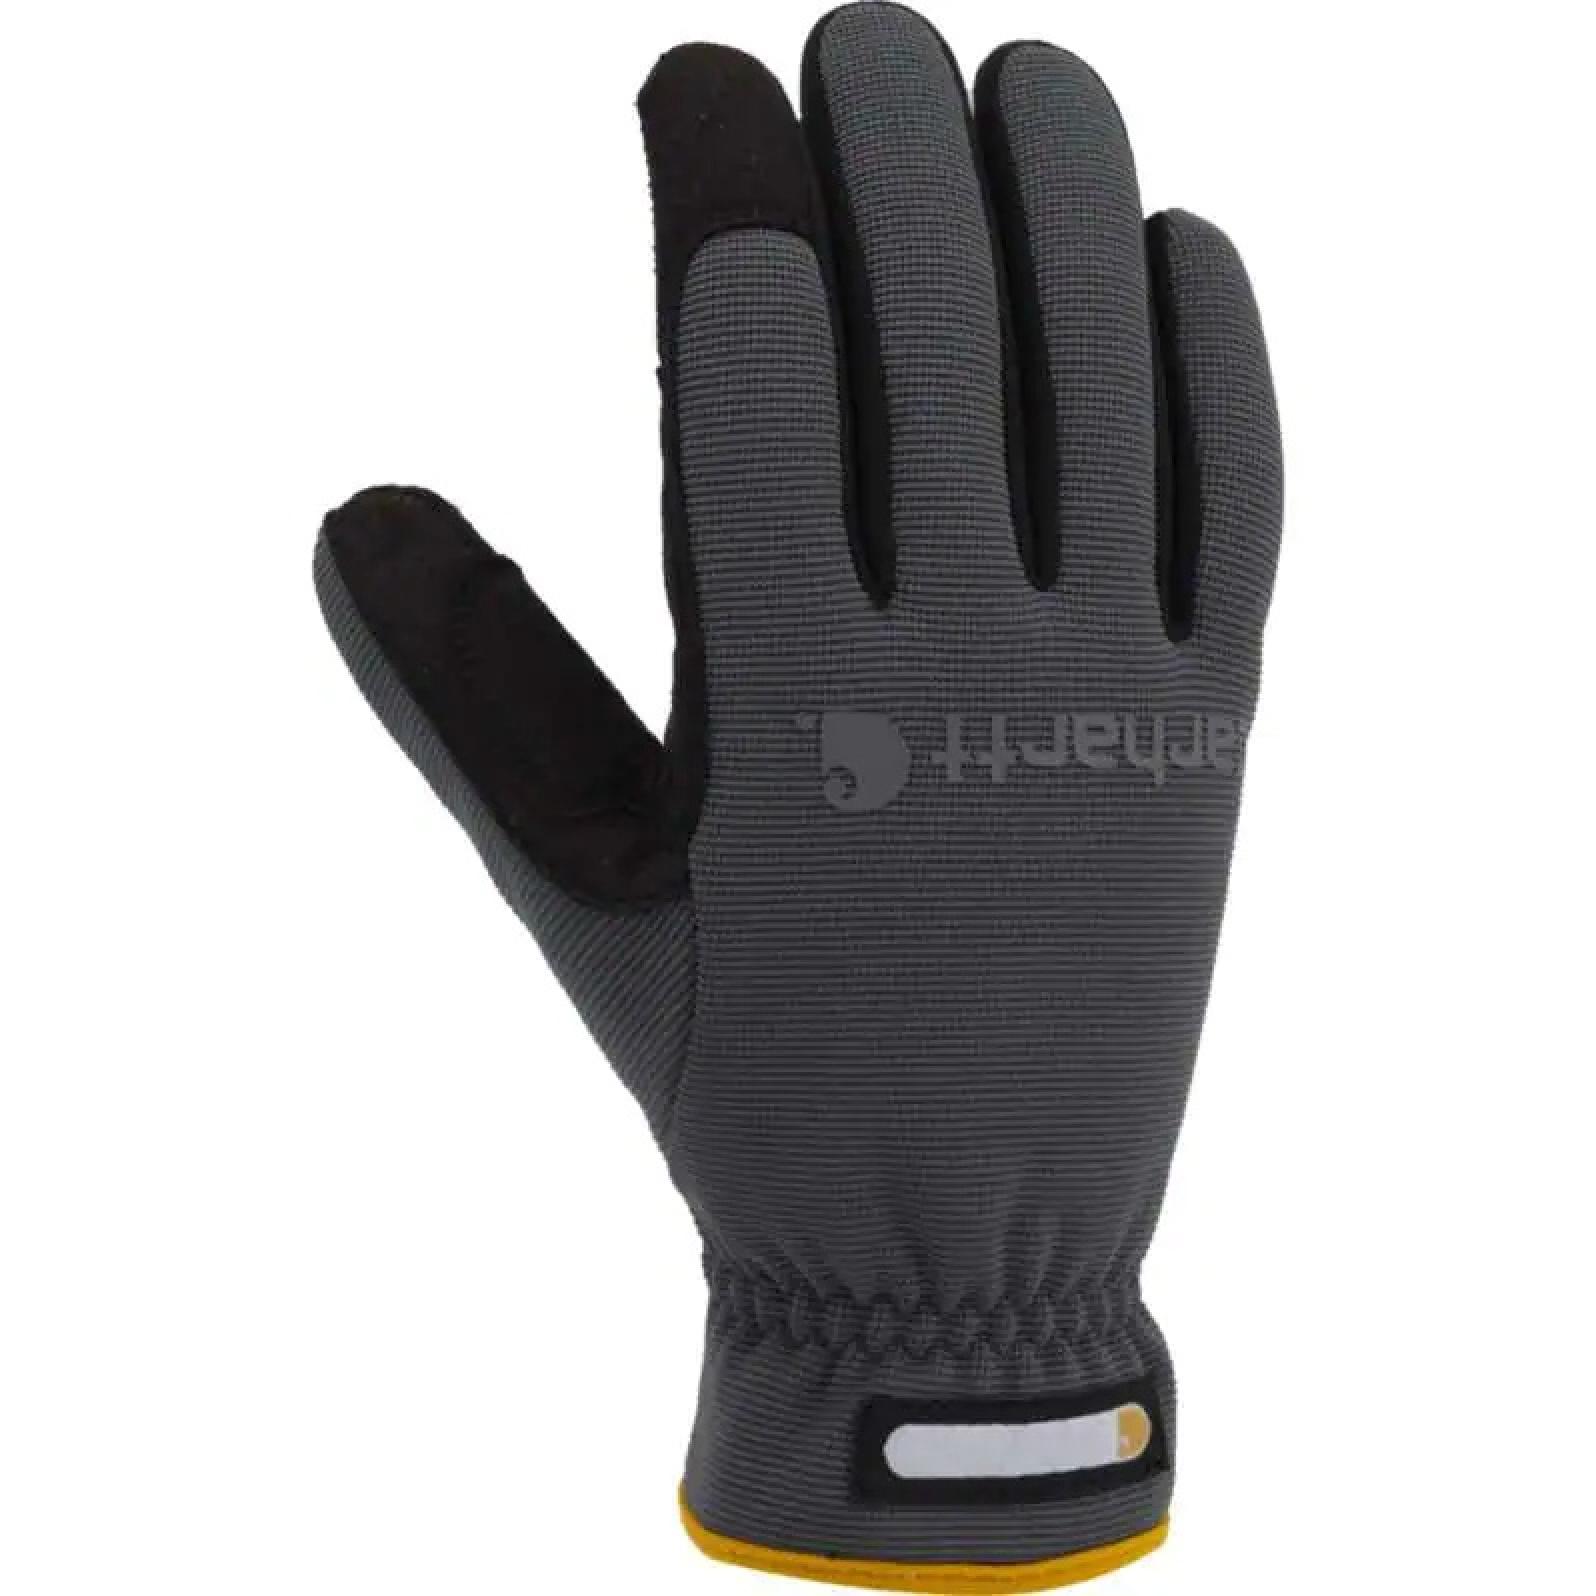 Carhartt Men's Work-Flex High Dexterity Glove